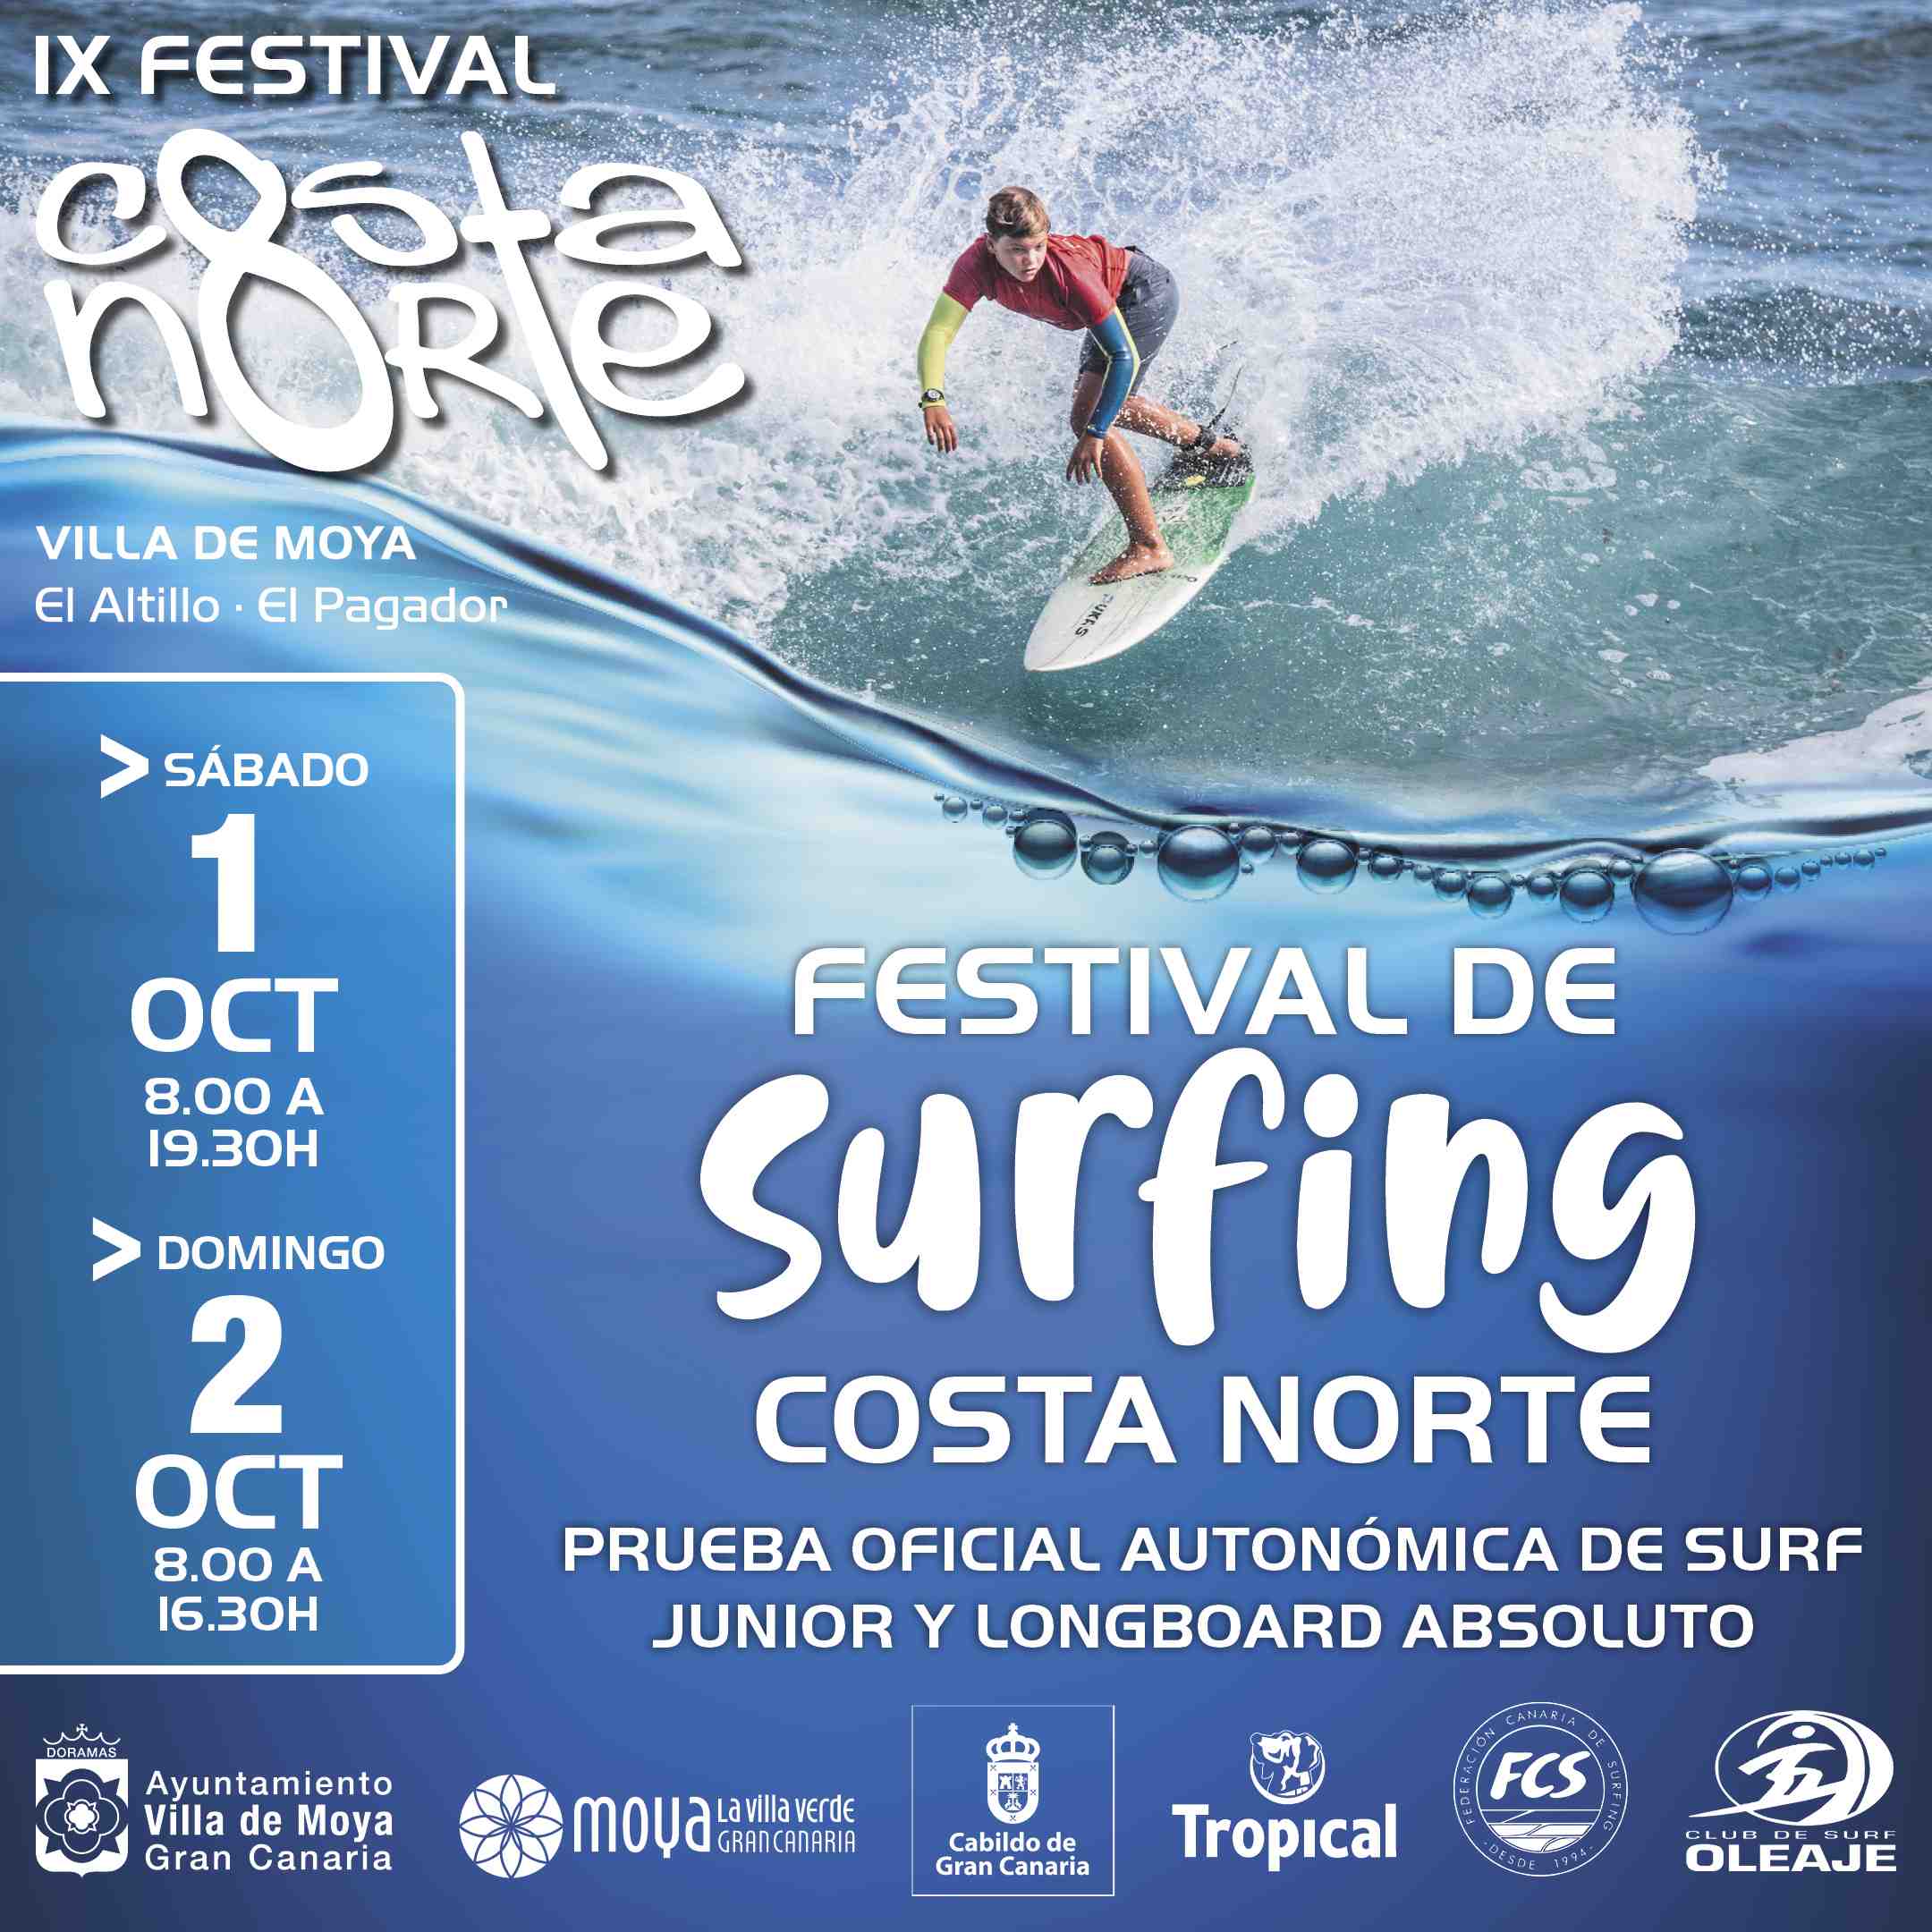 FESTIVAL DE SURFING COSTA NORTE 2022 - Inscríbete